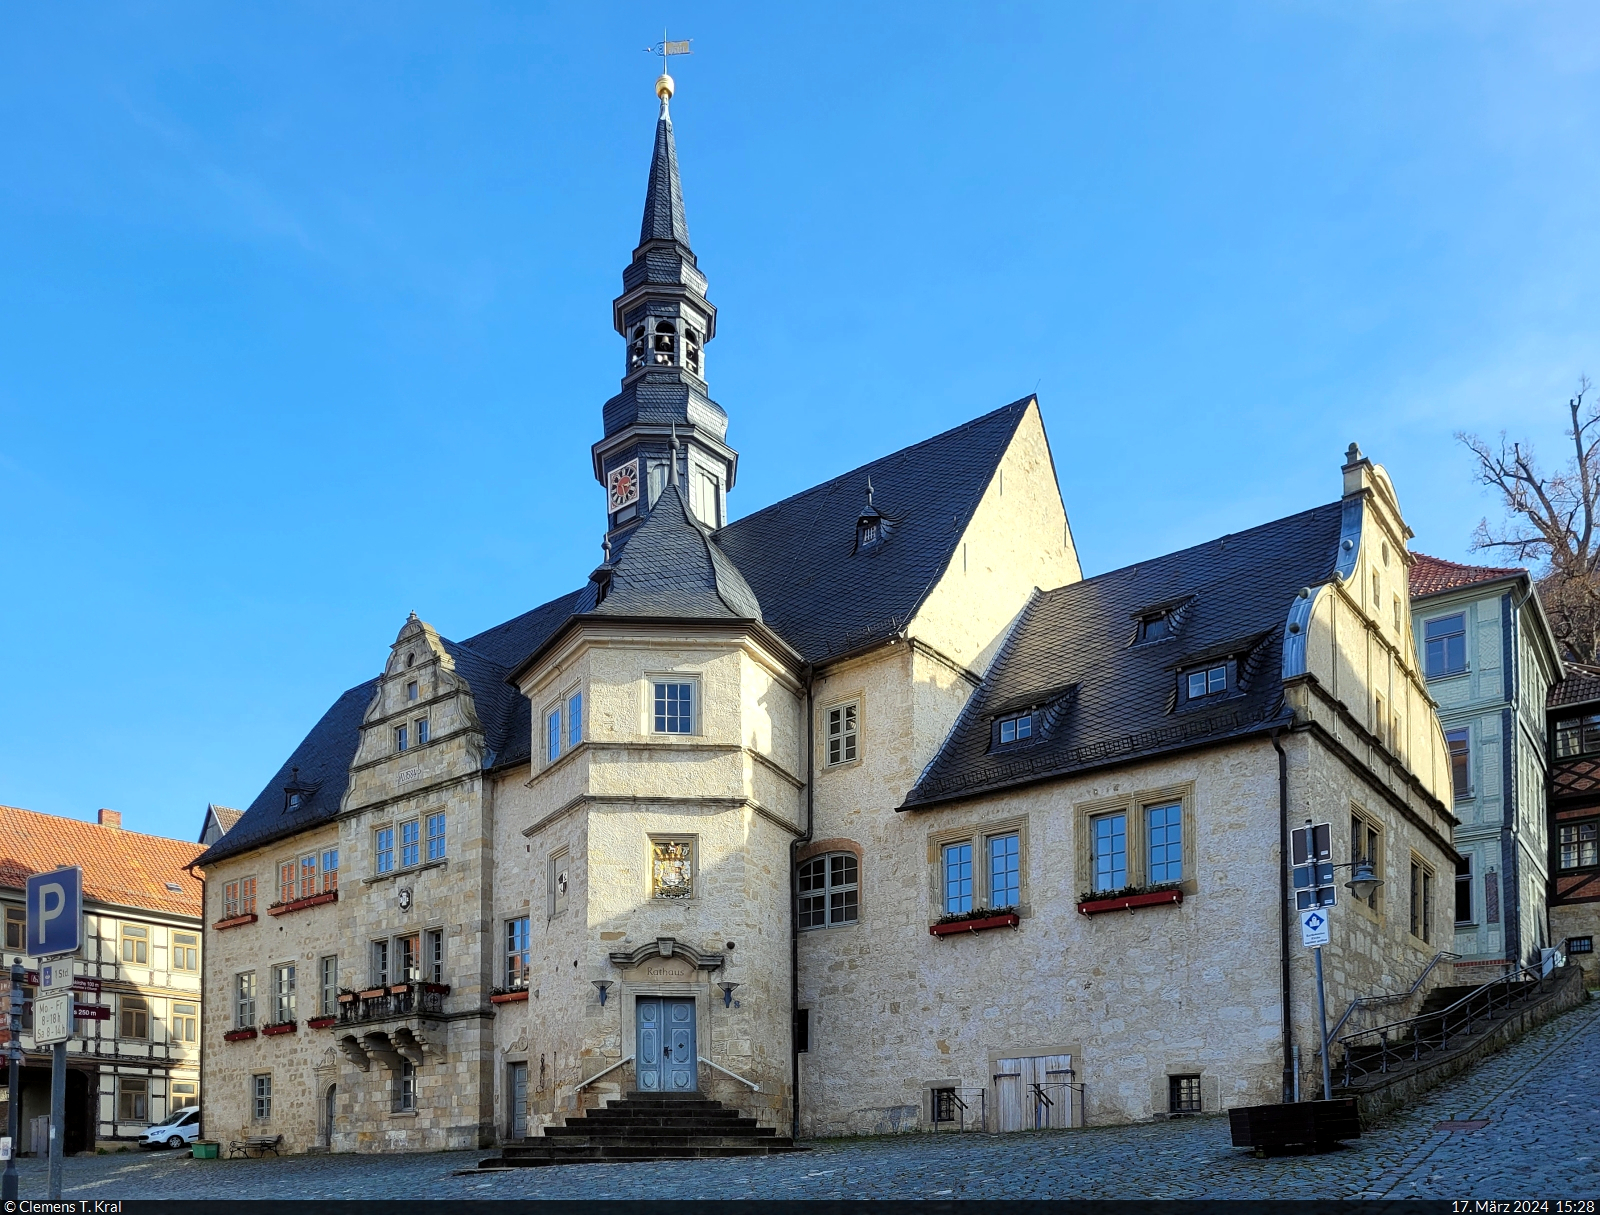 Rathaus von Blankenburg (Harz), entstanden im Mittelalter und in den folgenden Jahrhunderten immer wieder erweitert und umgebaut.

🕓 17.3.2024 | 15:28 Uhr